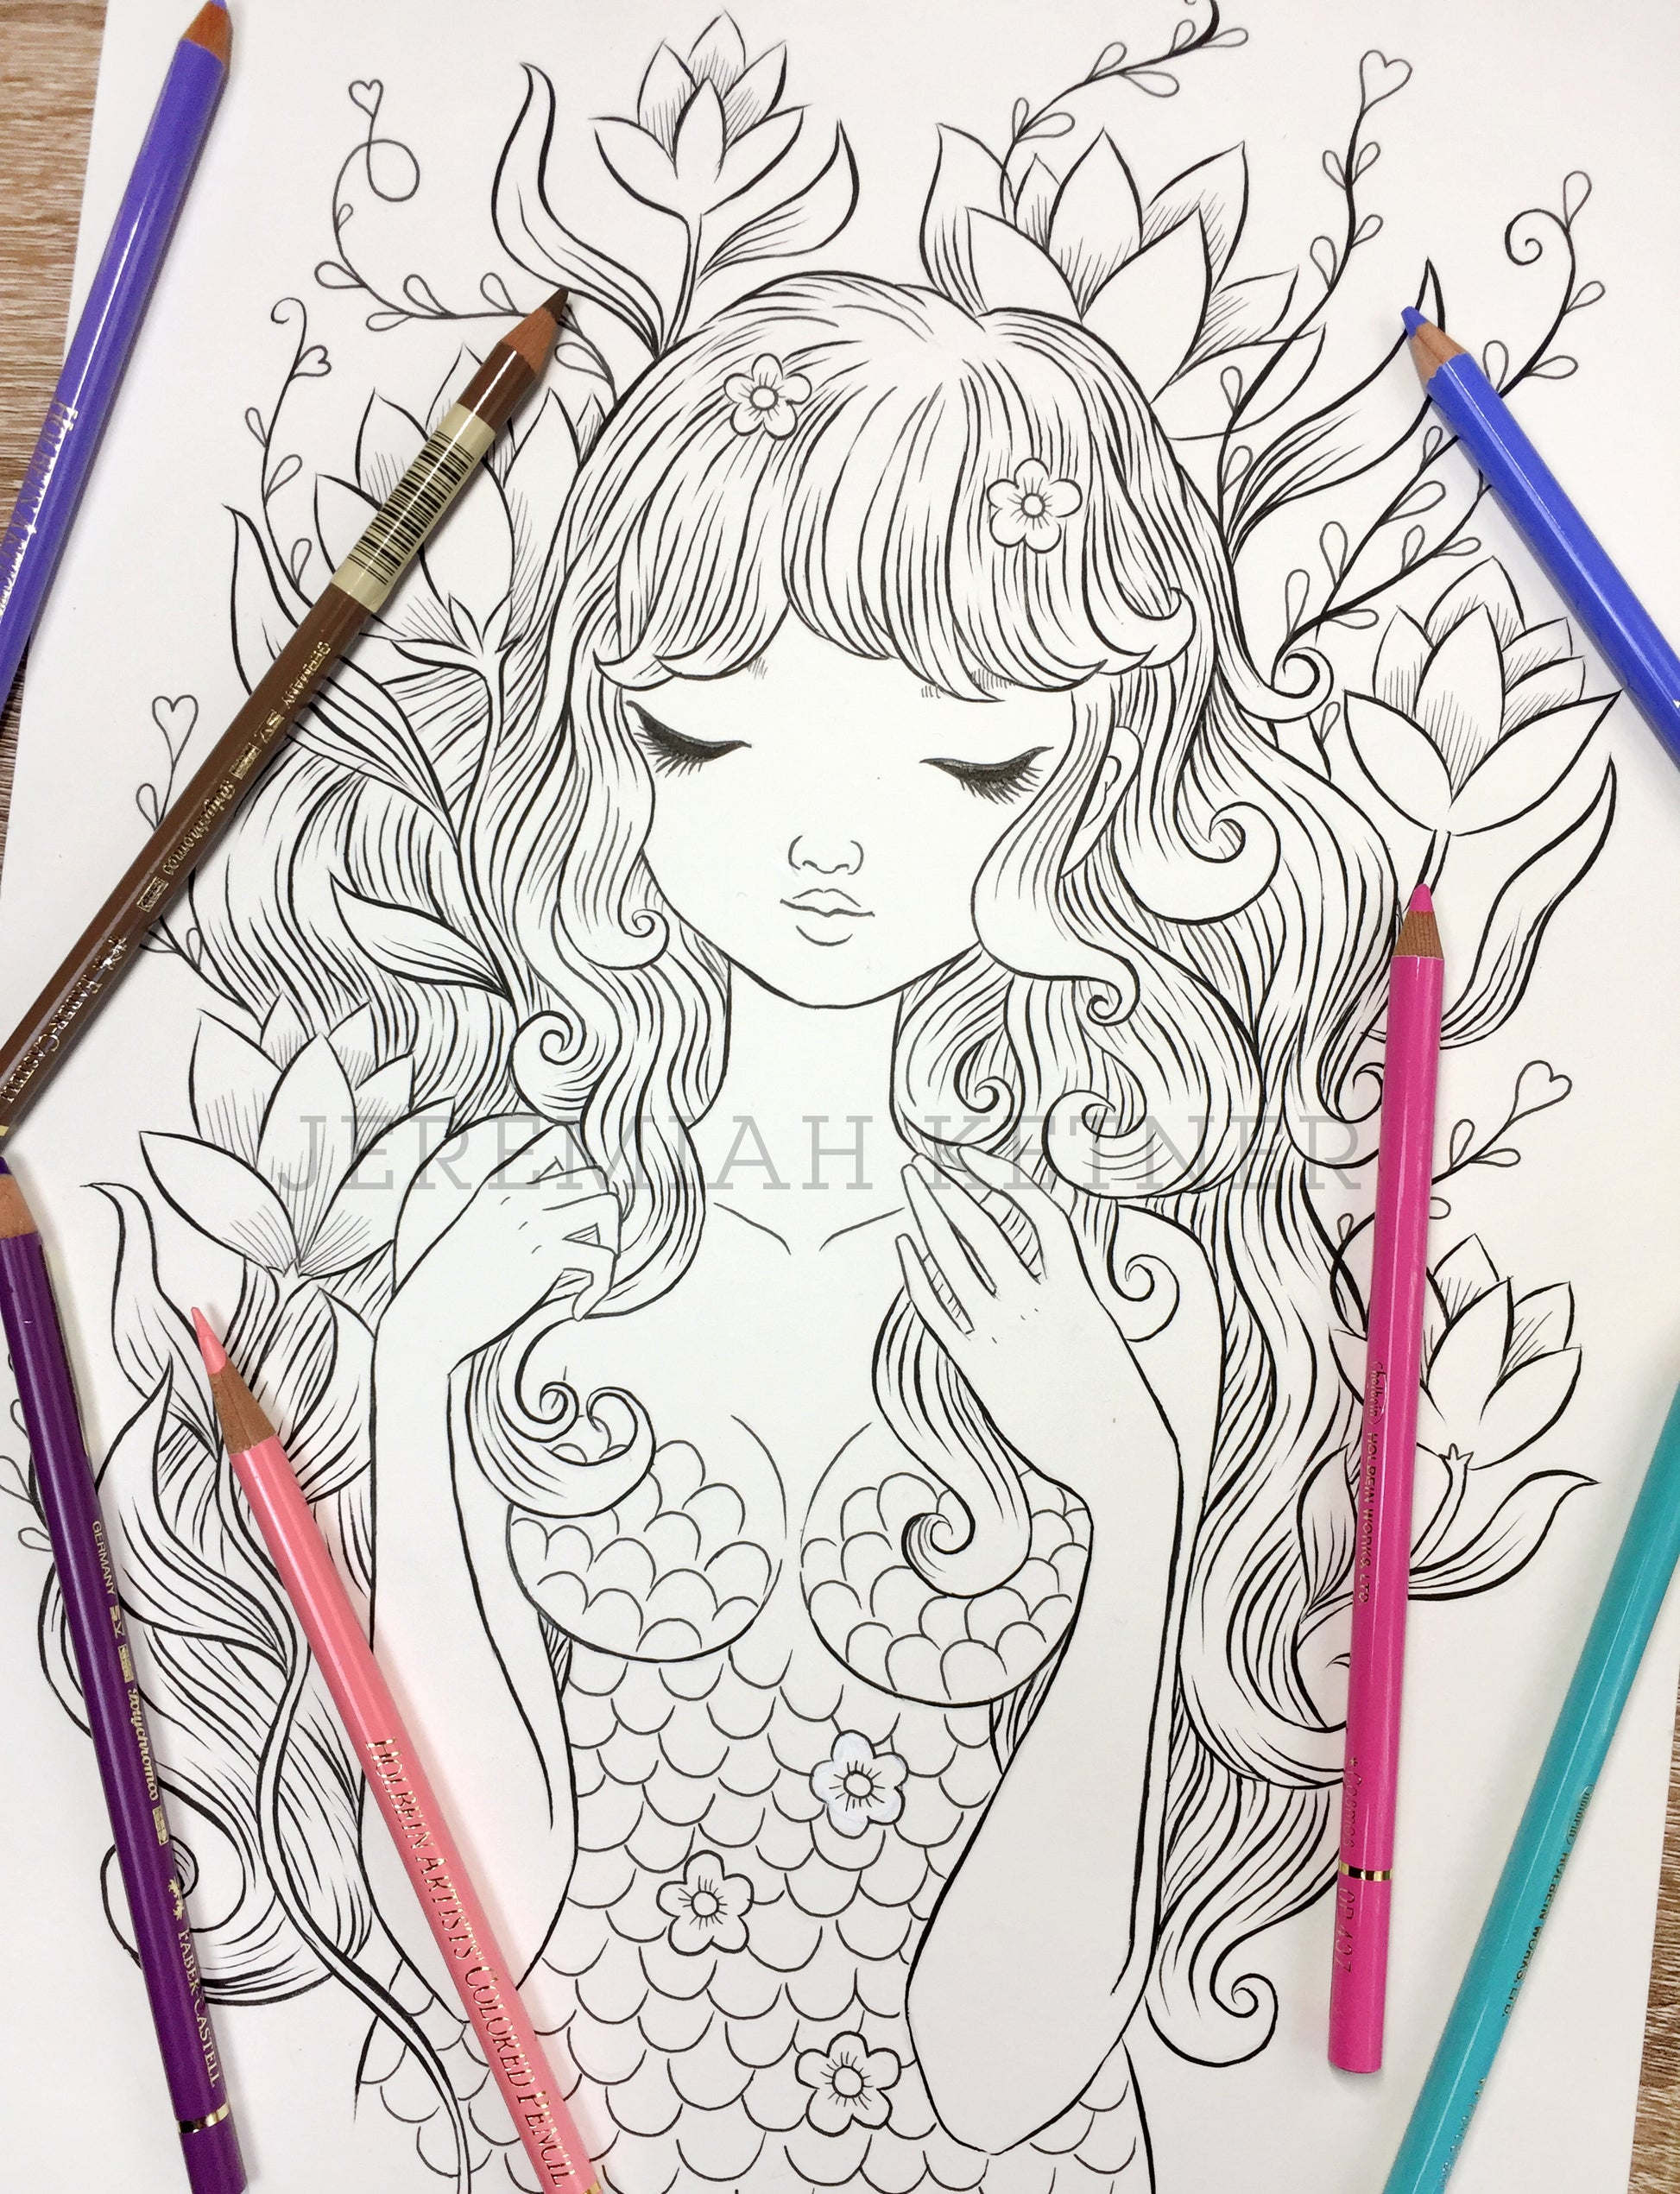 Mermaid Coloring Book/illustrations/digital Download 